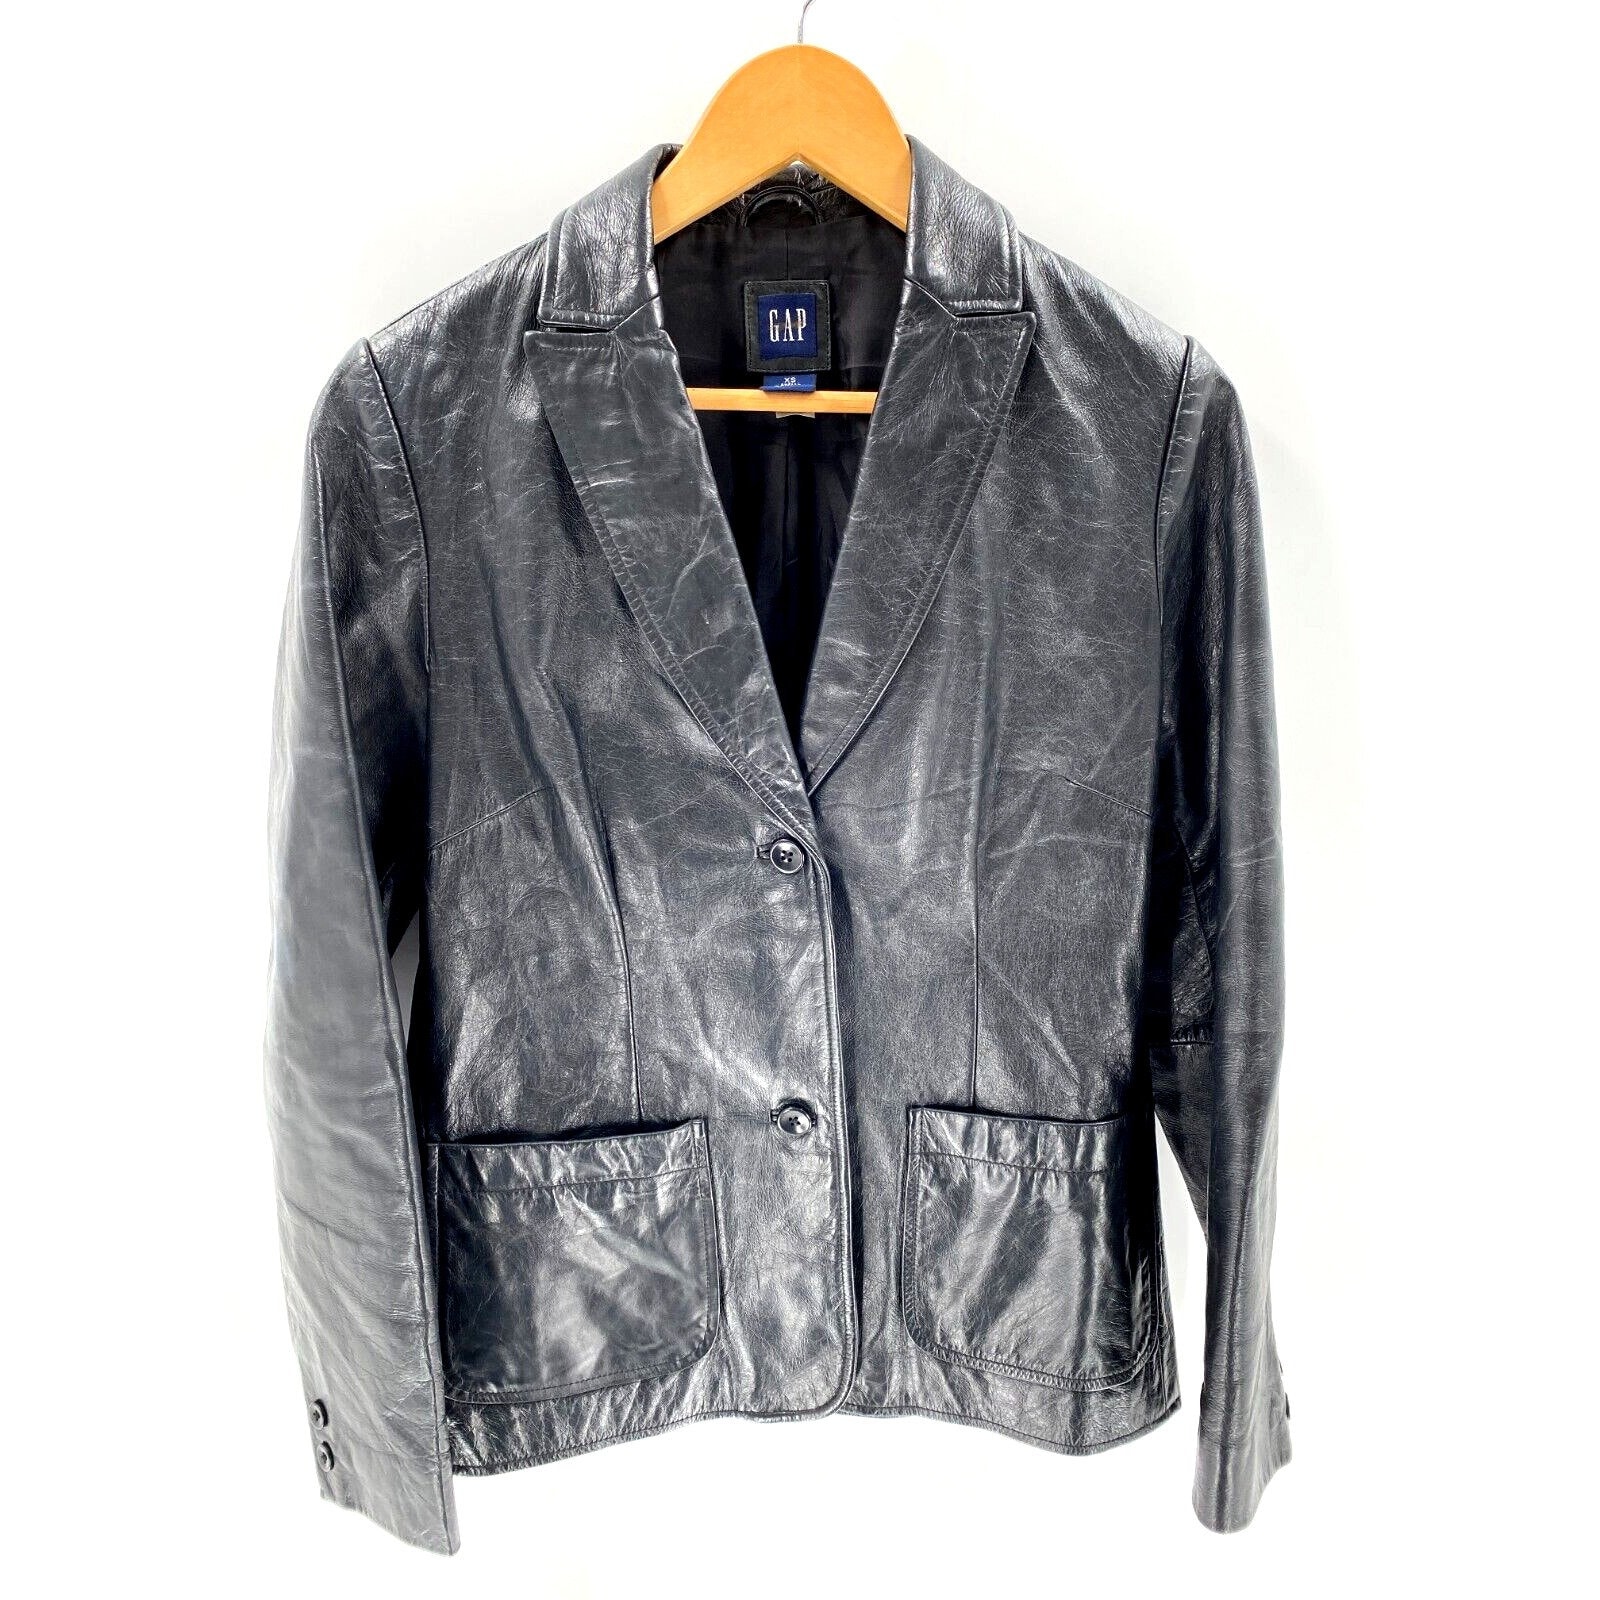 Gap Leather Jacket - Etsy